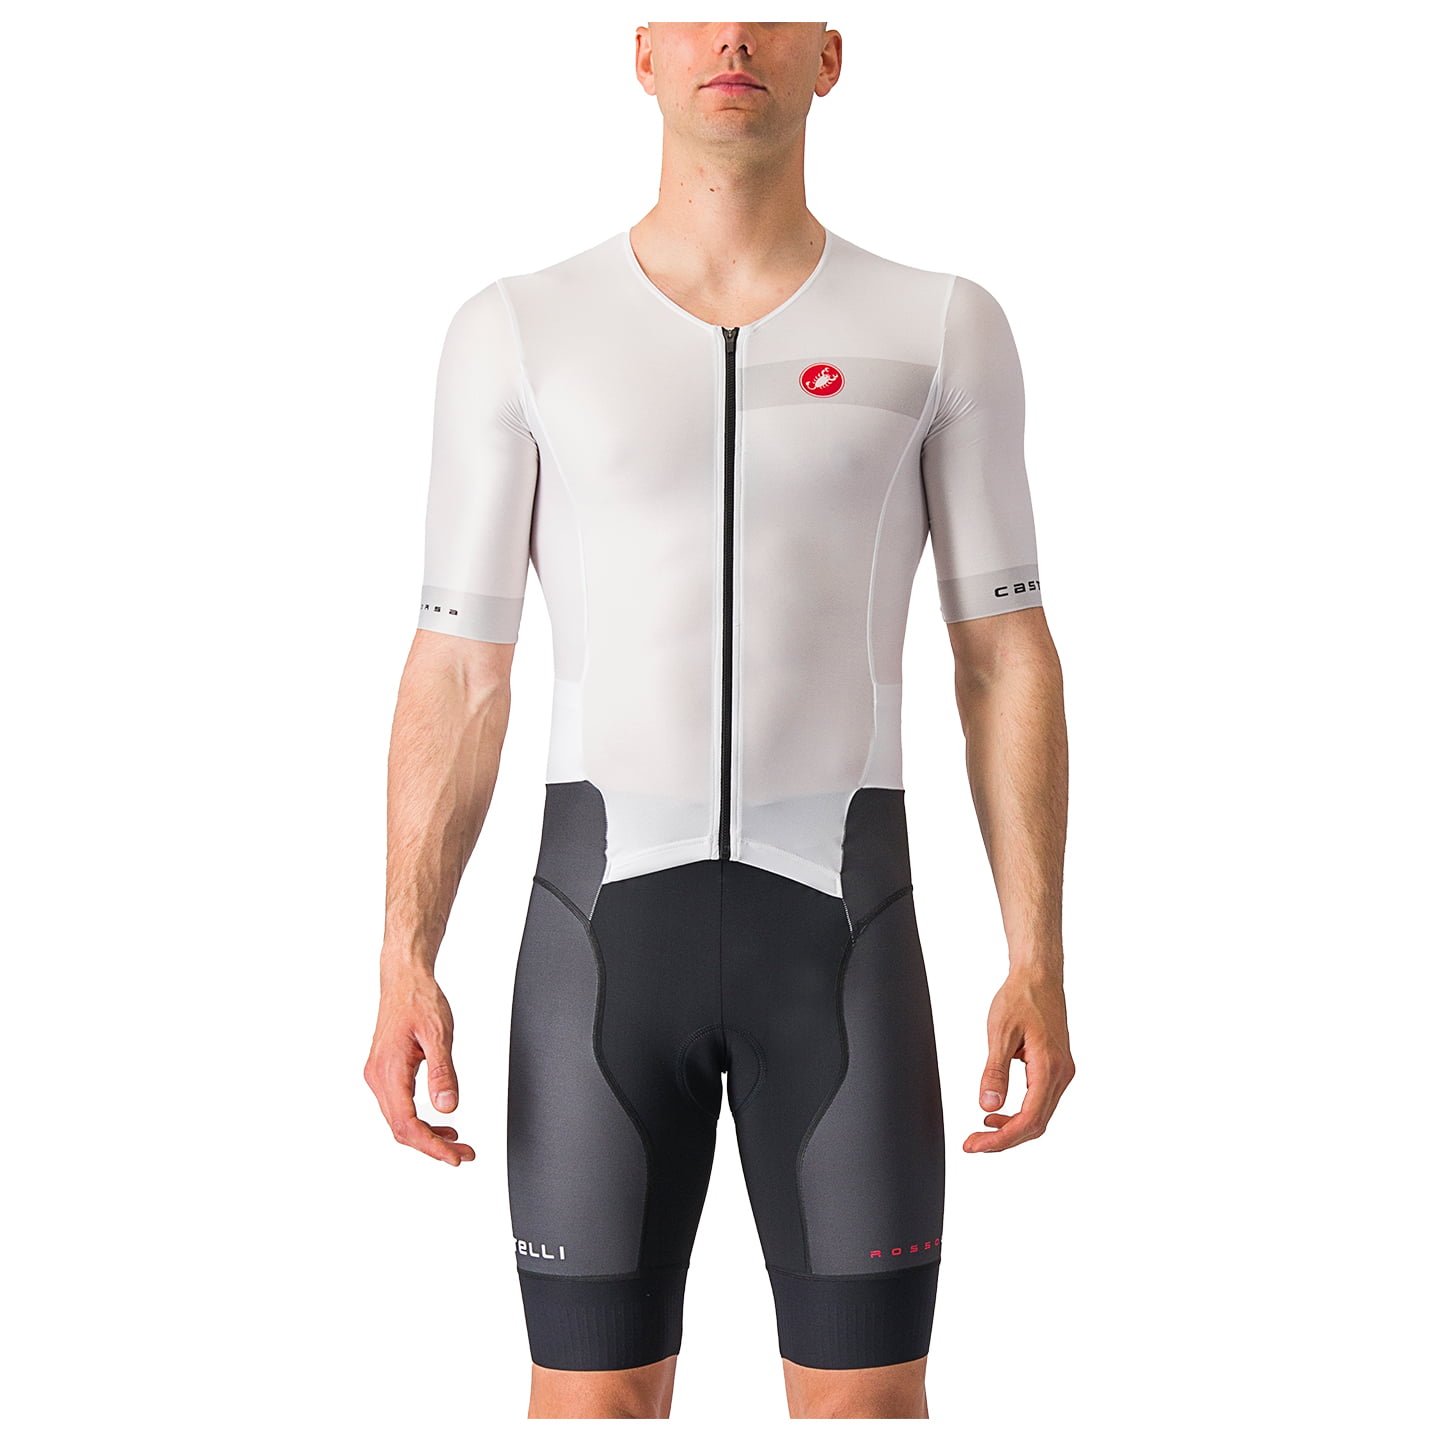 CASTELLI Free Sanremo 2 Tri Suit Tri Suit, for men, size XL, Triathlon suit, Triathlon gear